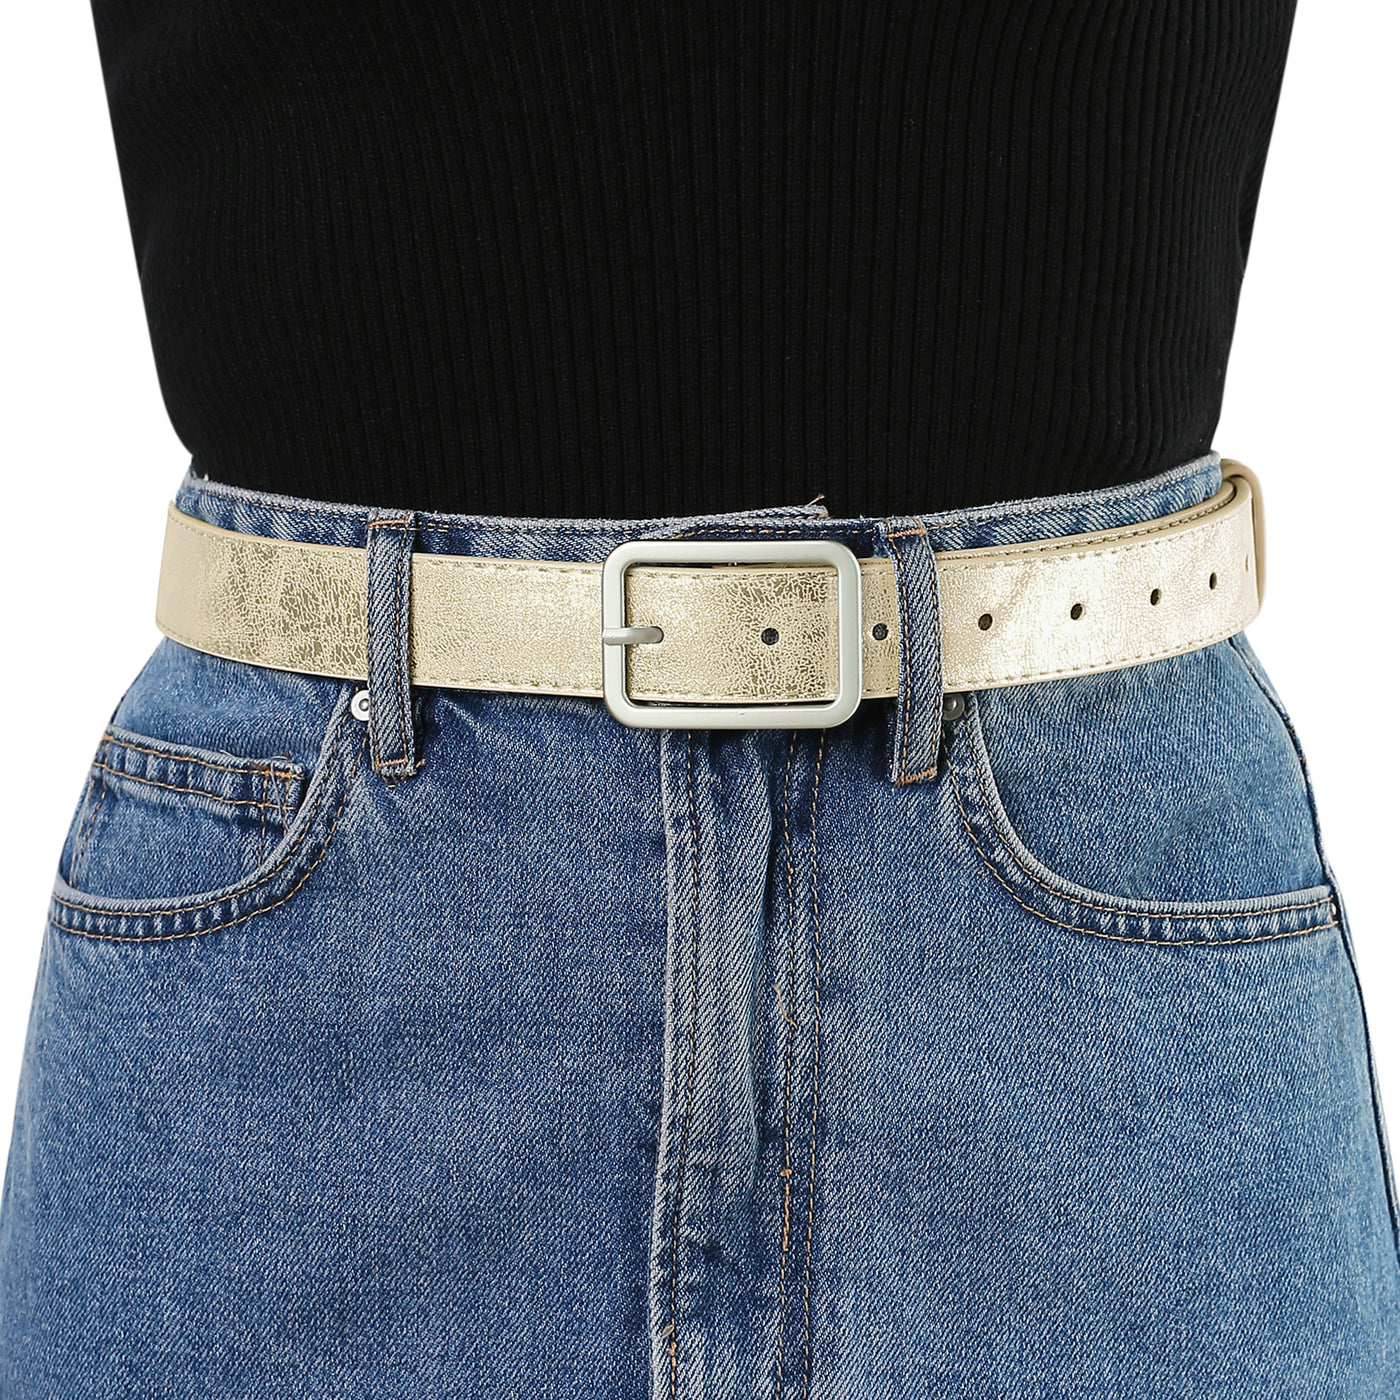 Allegra K Ladies Skinny Belts PU Casual Shiny Waist Belt for Dress Jeans Single Pin Buckle